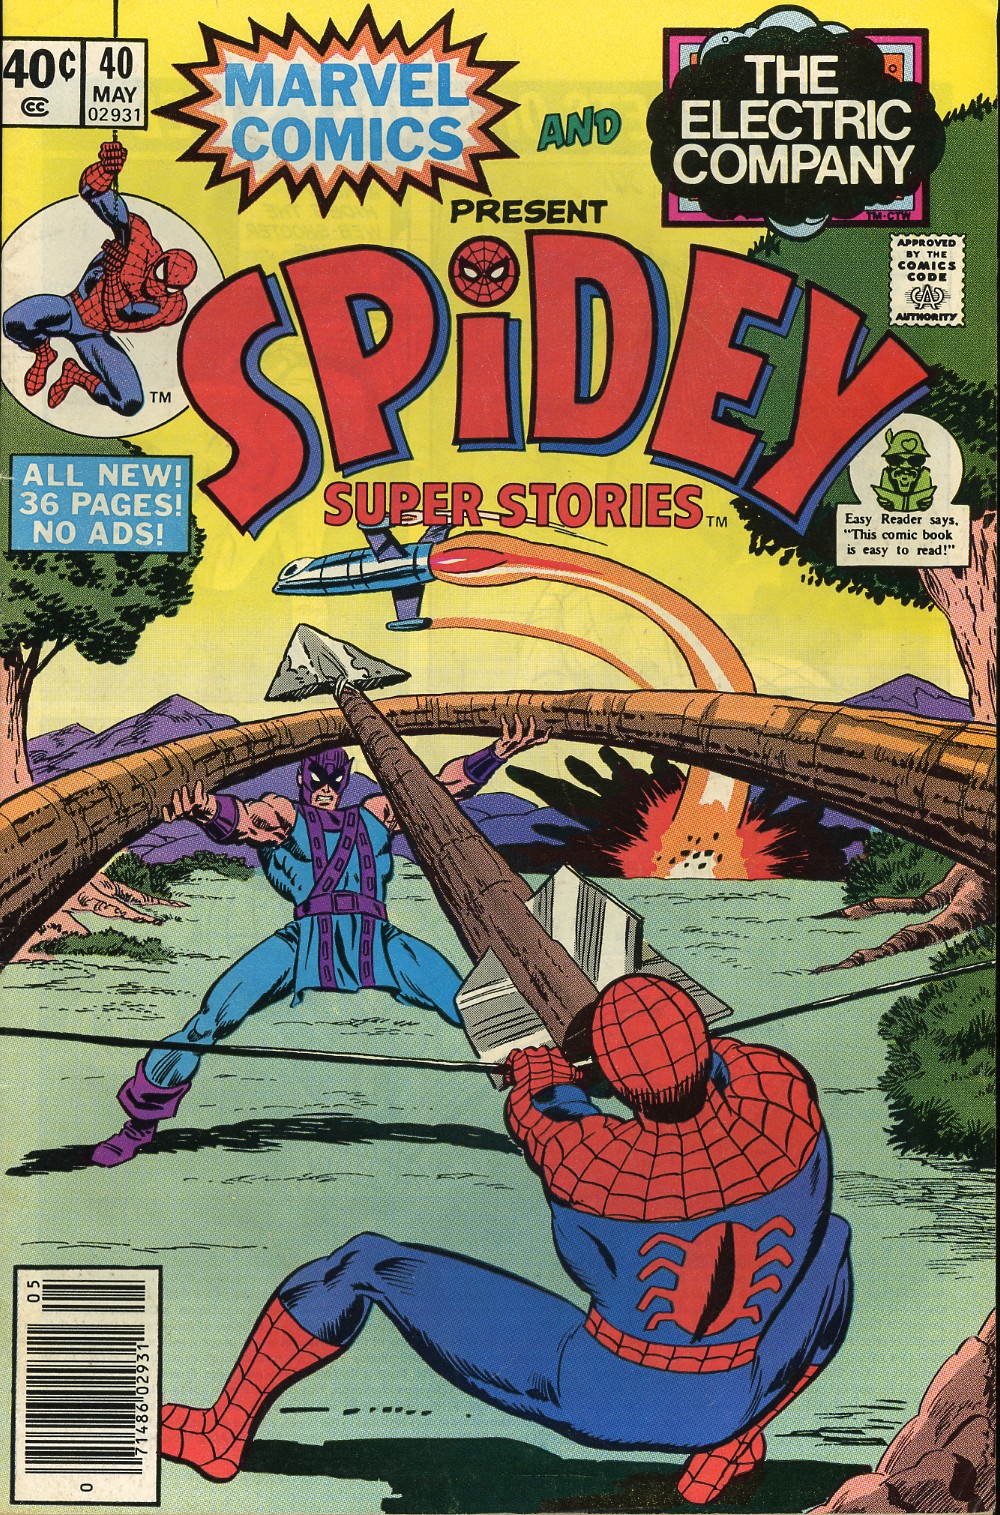 Spidey Super Stories issue 40 - Page 1